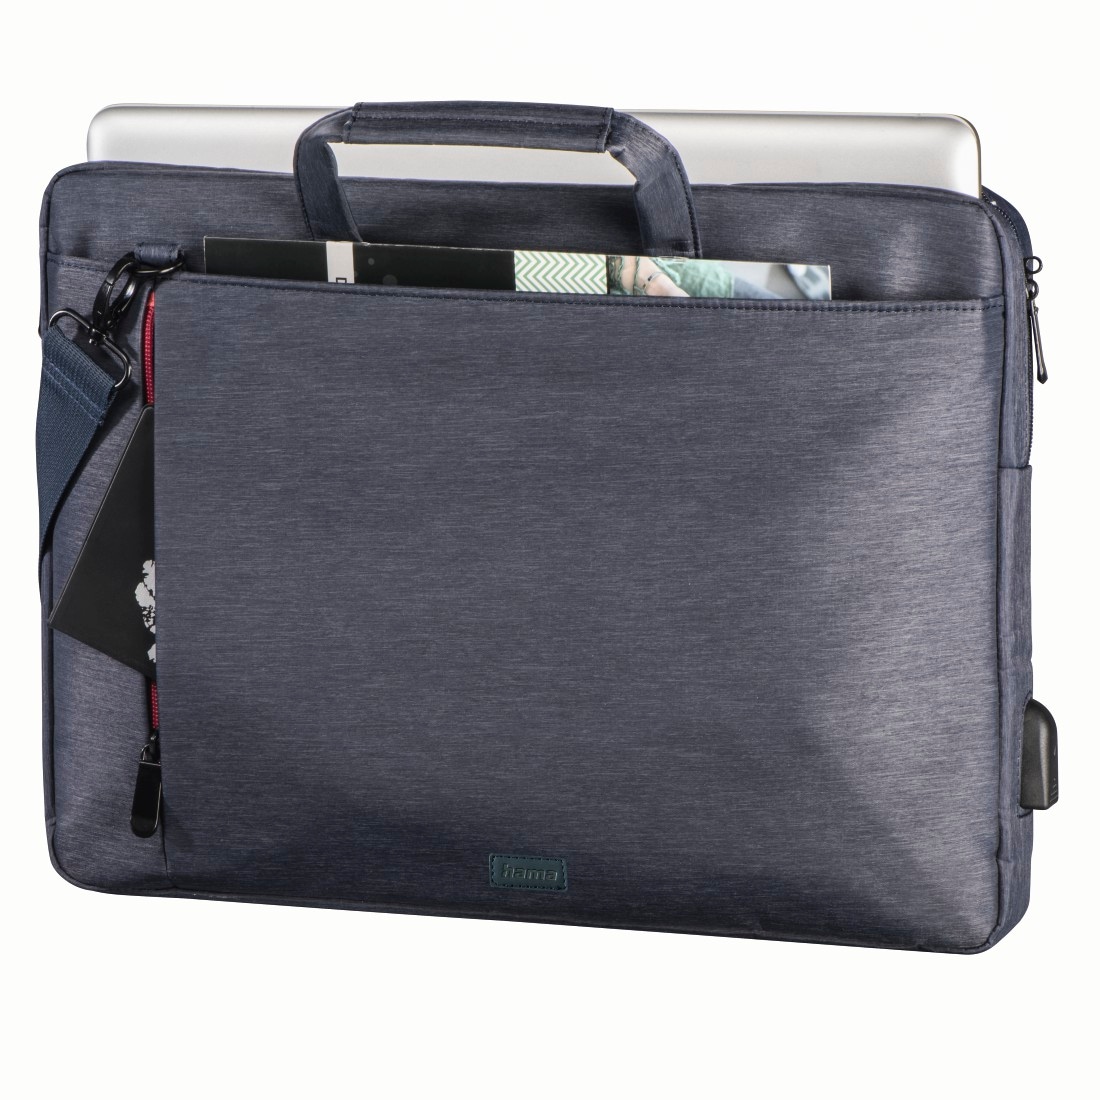 Hama Laptoptasche »Notebook Tasche bis 44cm (17,3"), Farbe Blau, modisches Design«, Mit Tabletfach, Vordertaschen, Organizerstruktur, Trolleyband,USB-Port